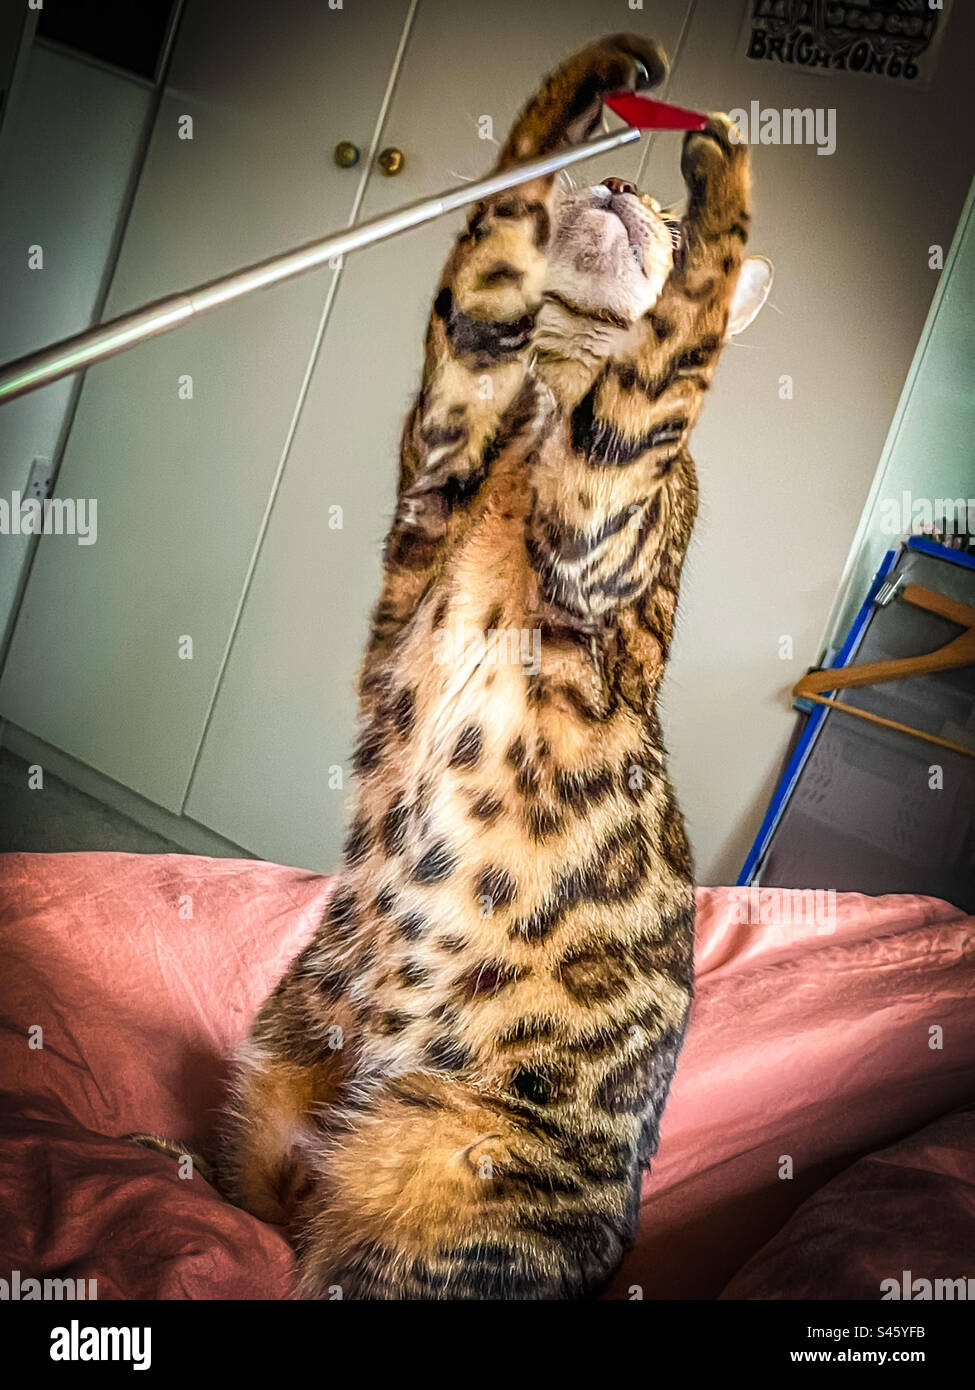 Pet Bengal cat Stock Photo